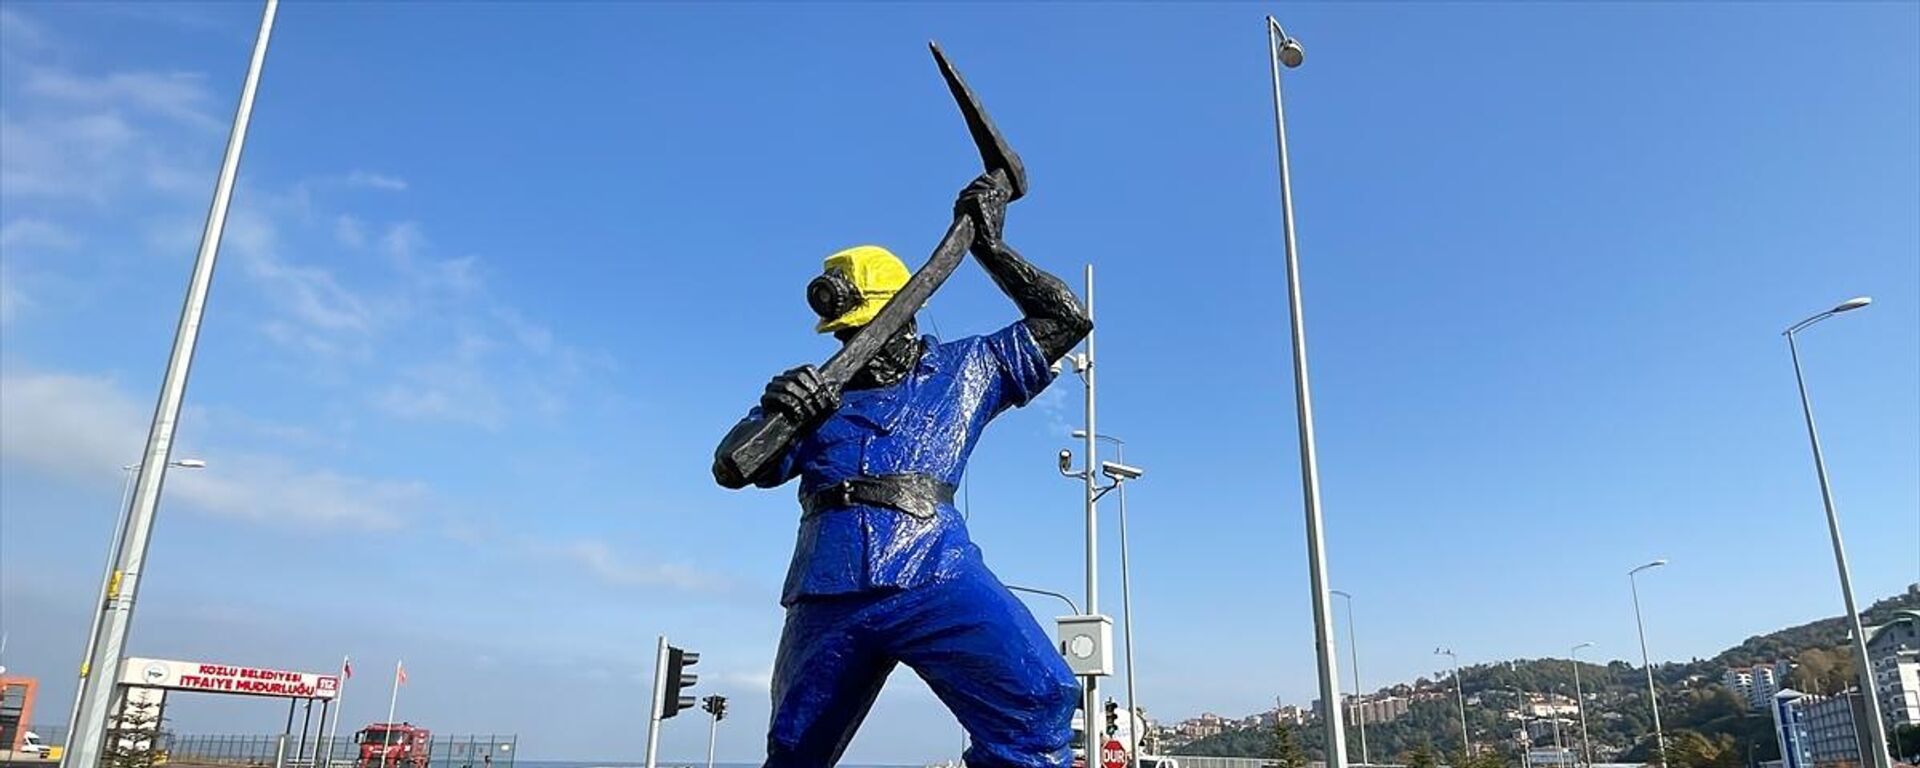 Madenci heykelinin boyanmasına tepki gösteren heykeltıraşa belediyeden yanıt: 'İhya ettik' - Sputnik Türkiye, 1920, 03.11.2022